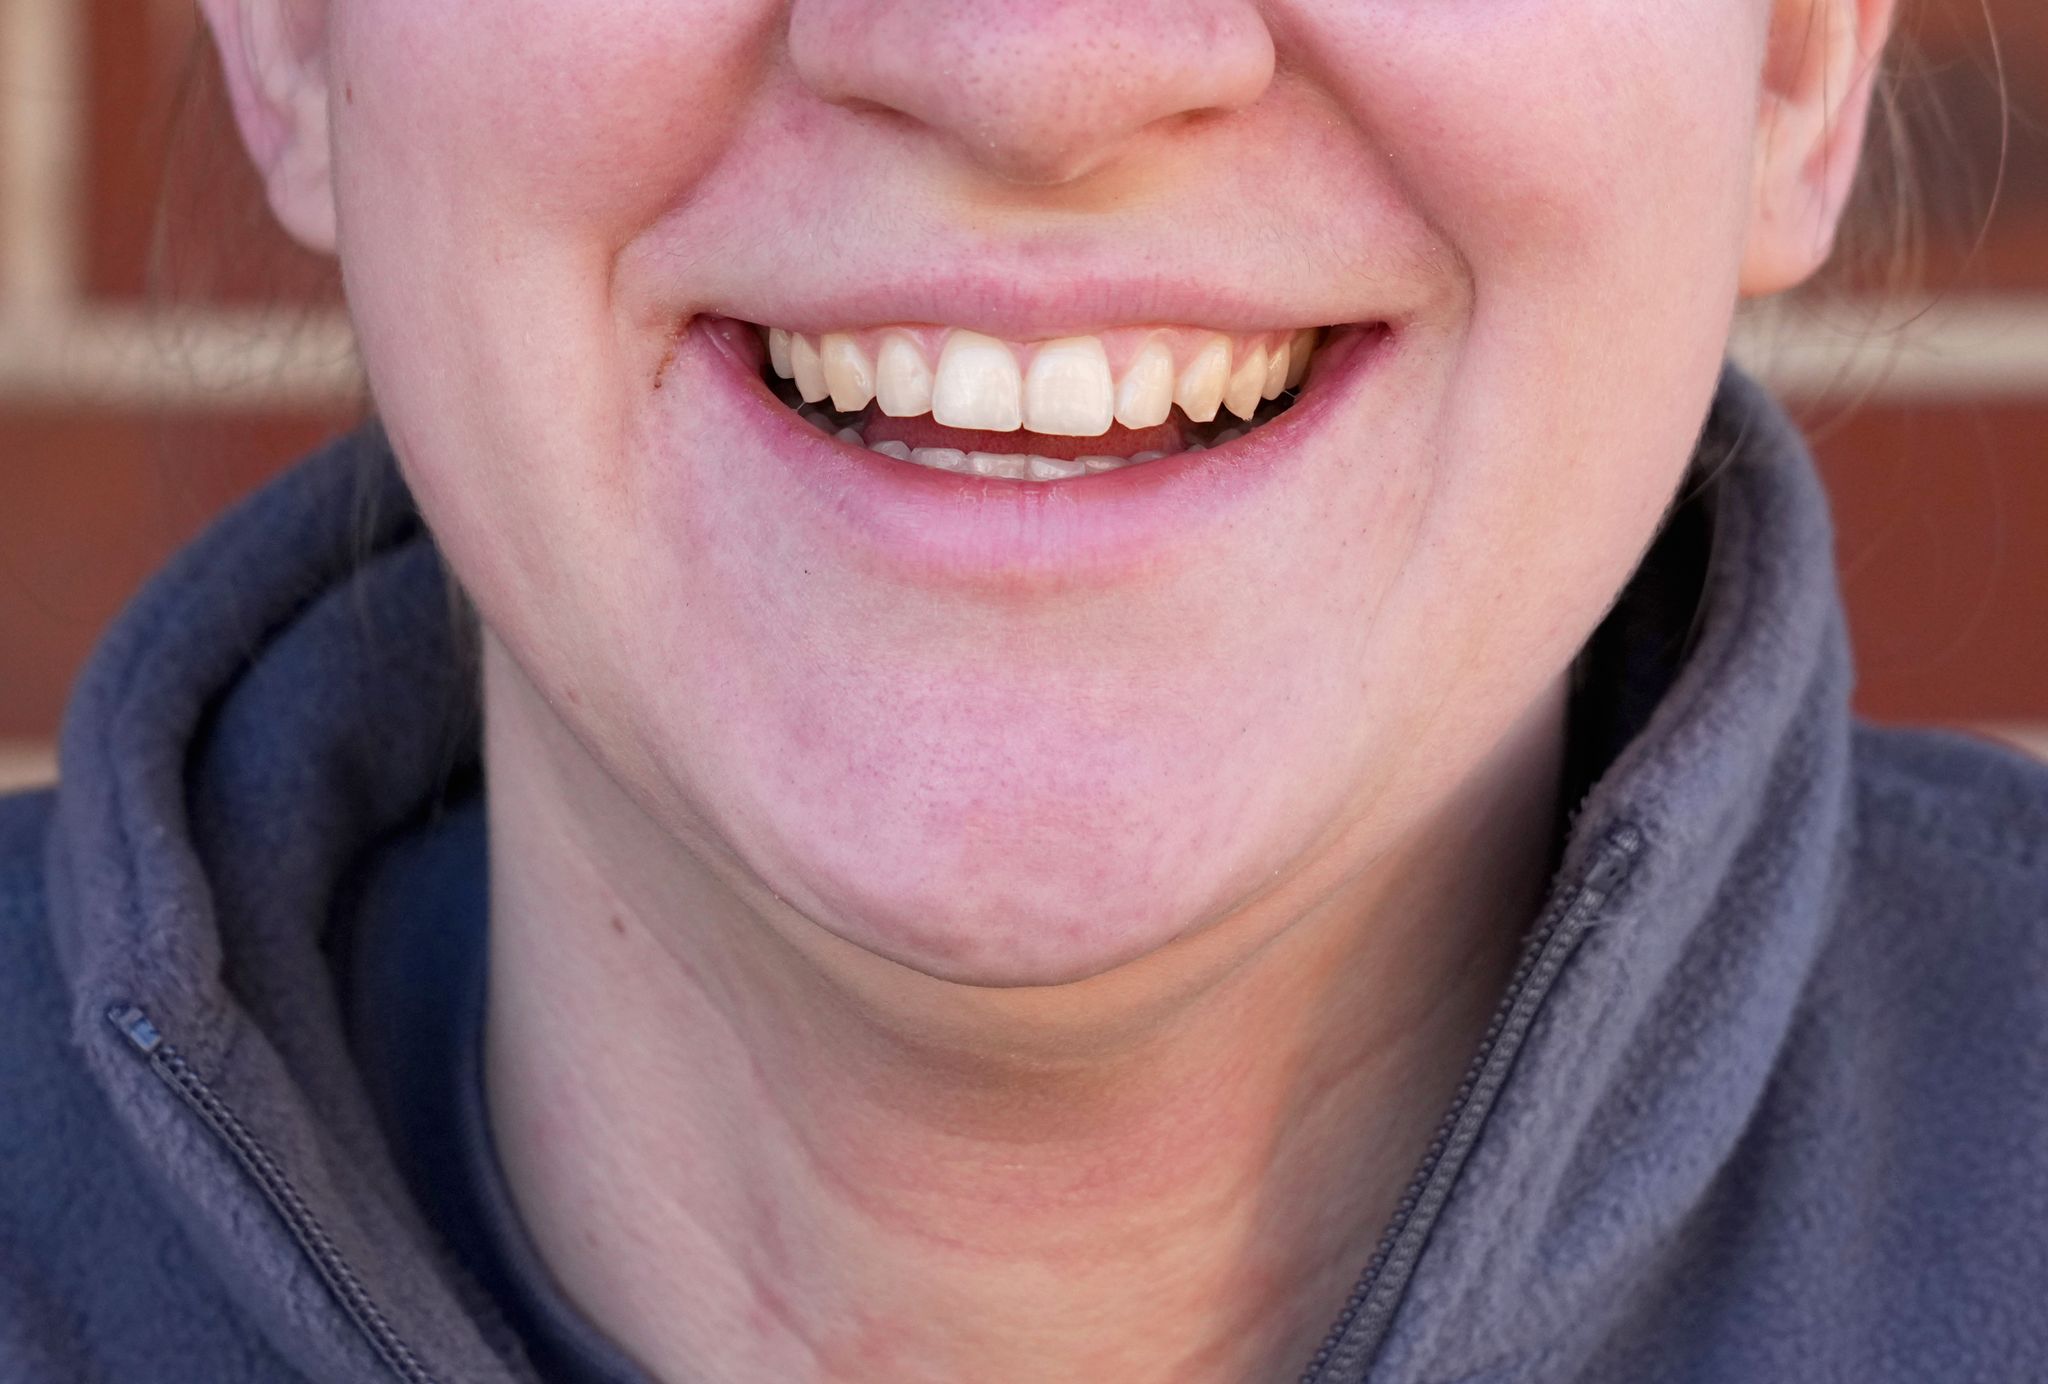 Die Anspannung von Gesichtsmuskeln, wie sie für ein Lächeln üblich ist, macht Menschen ein wenig glücklicher.